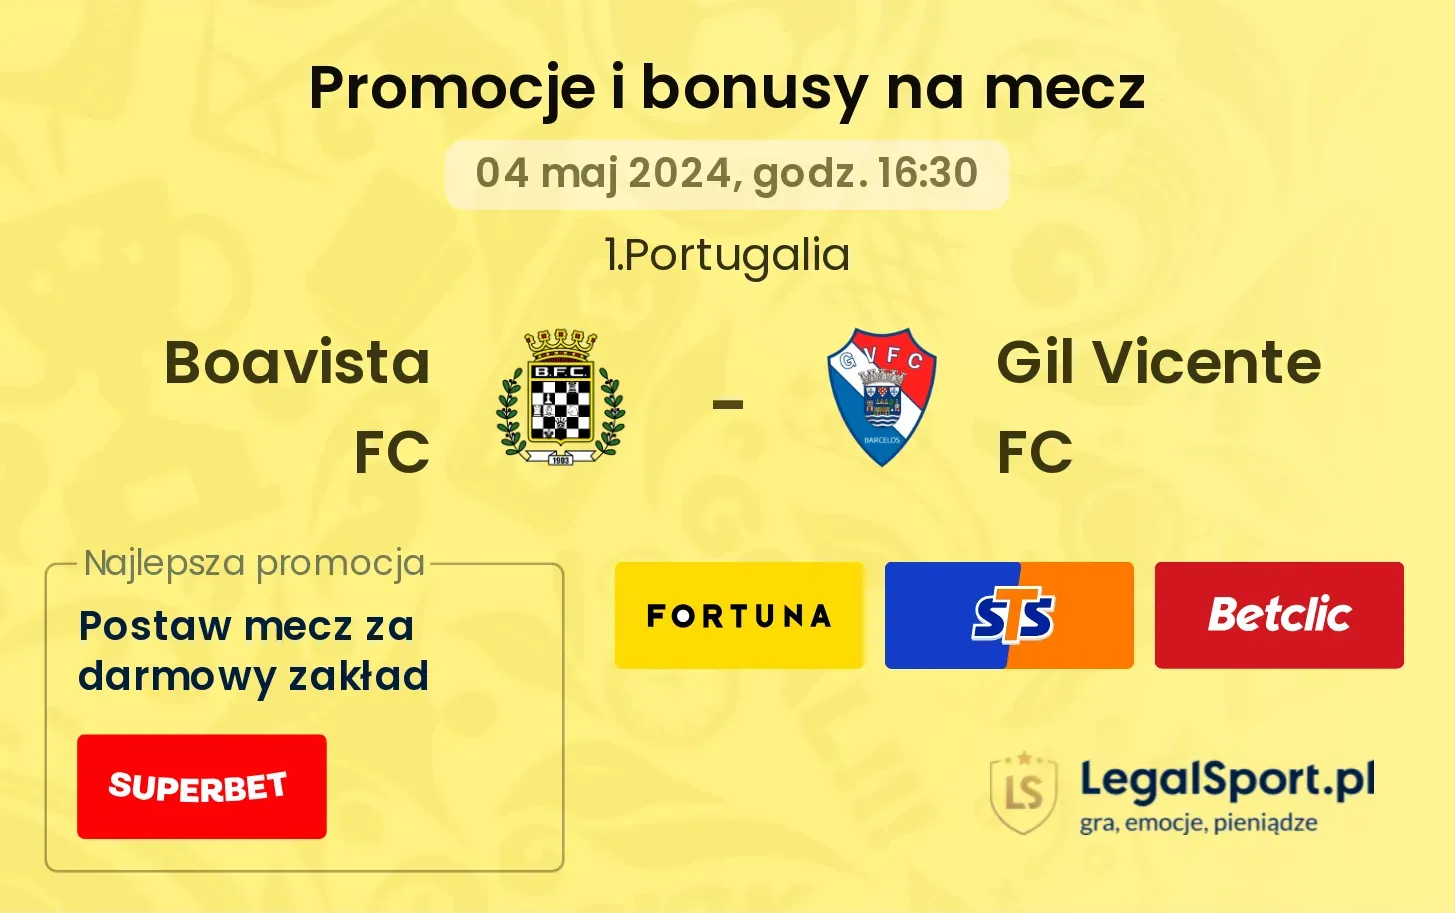 Boavista FC - Gil Vicente FC promocje bonusy na mecz